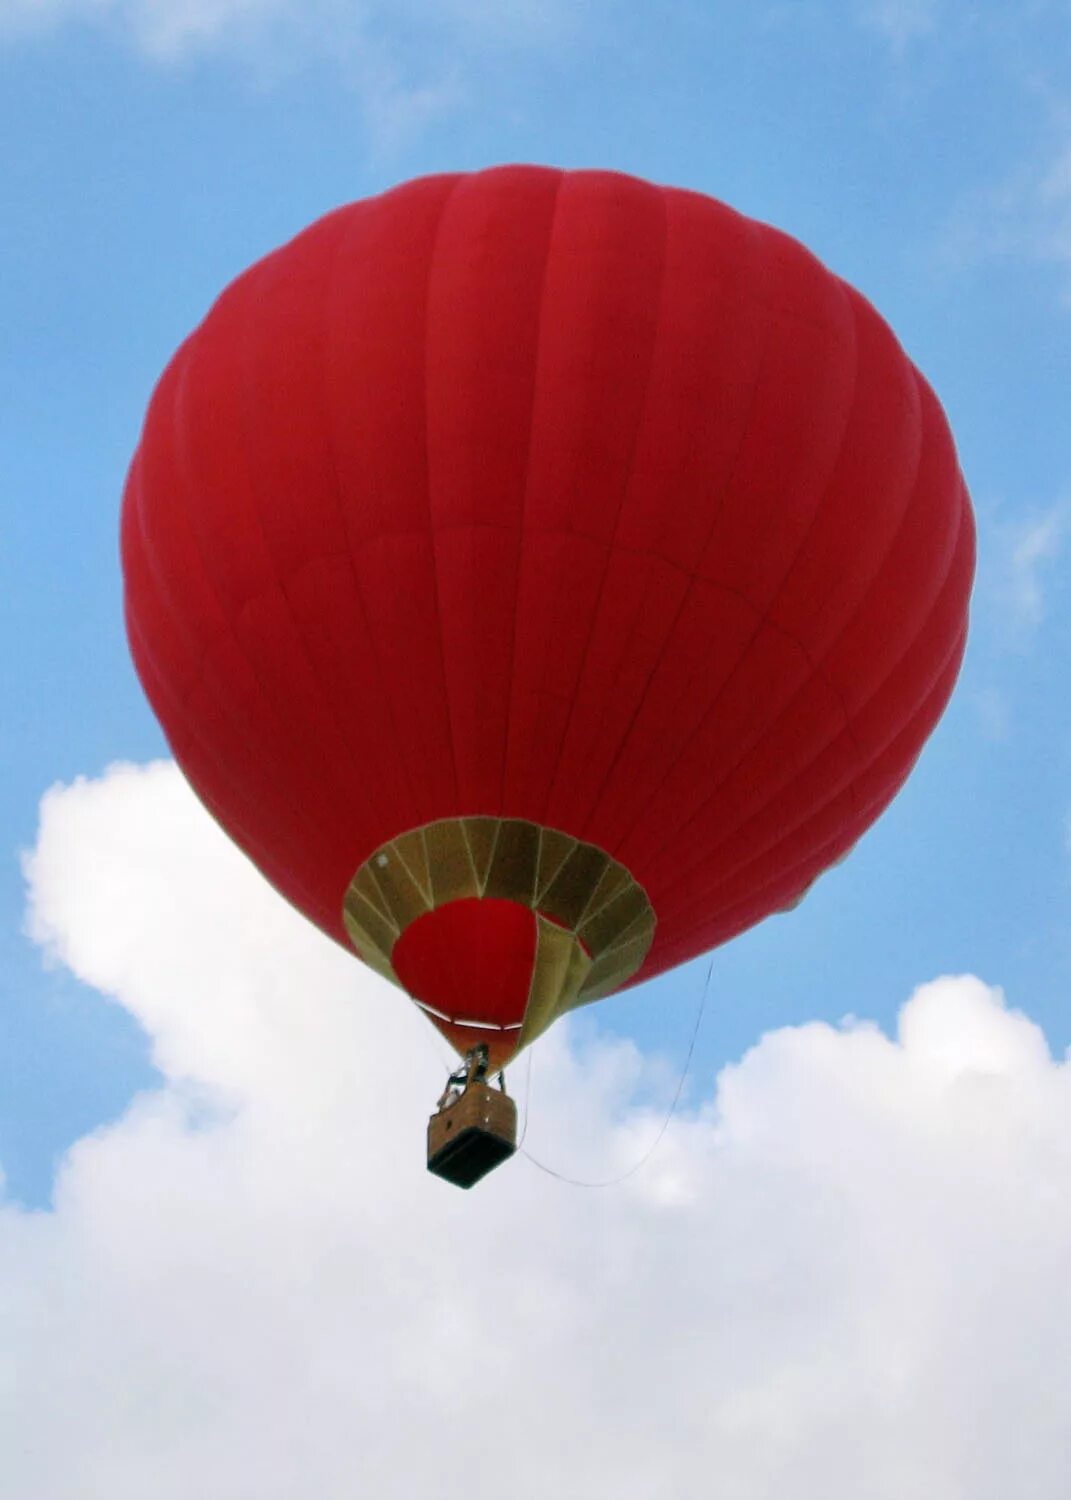 Груз на воздушном шаре. Воздушный шар. Воздушный шар с корзиной. Красный воздушный шар с корзиной. Воздушный шар аэростат.